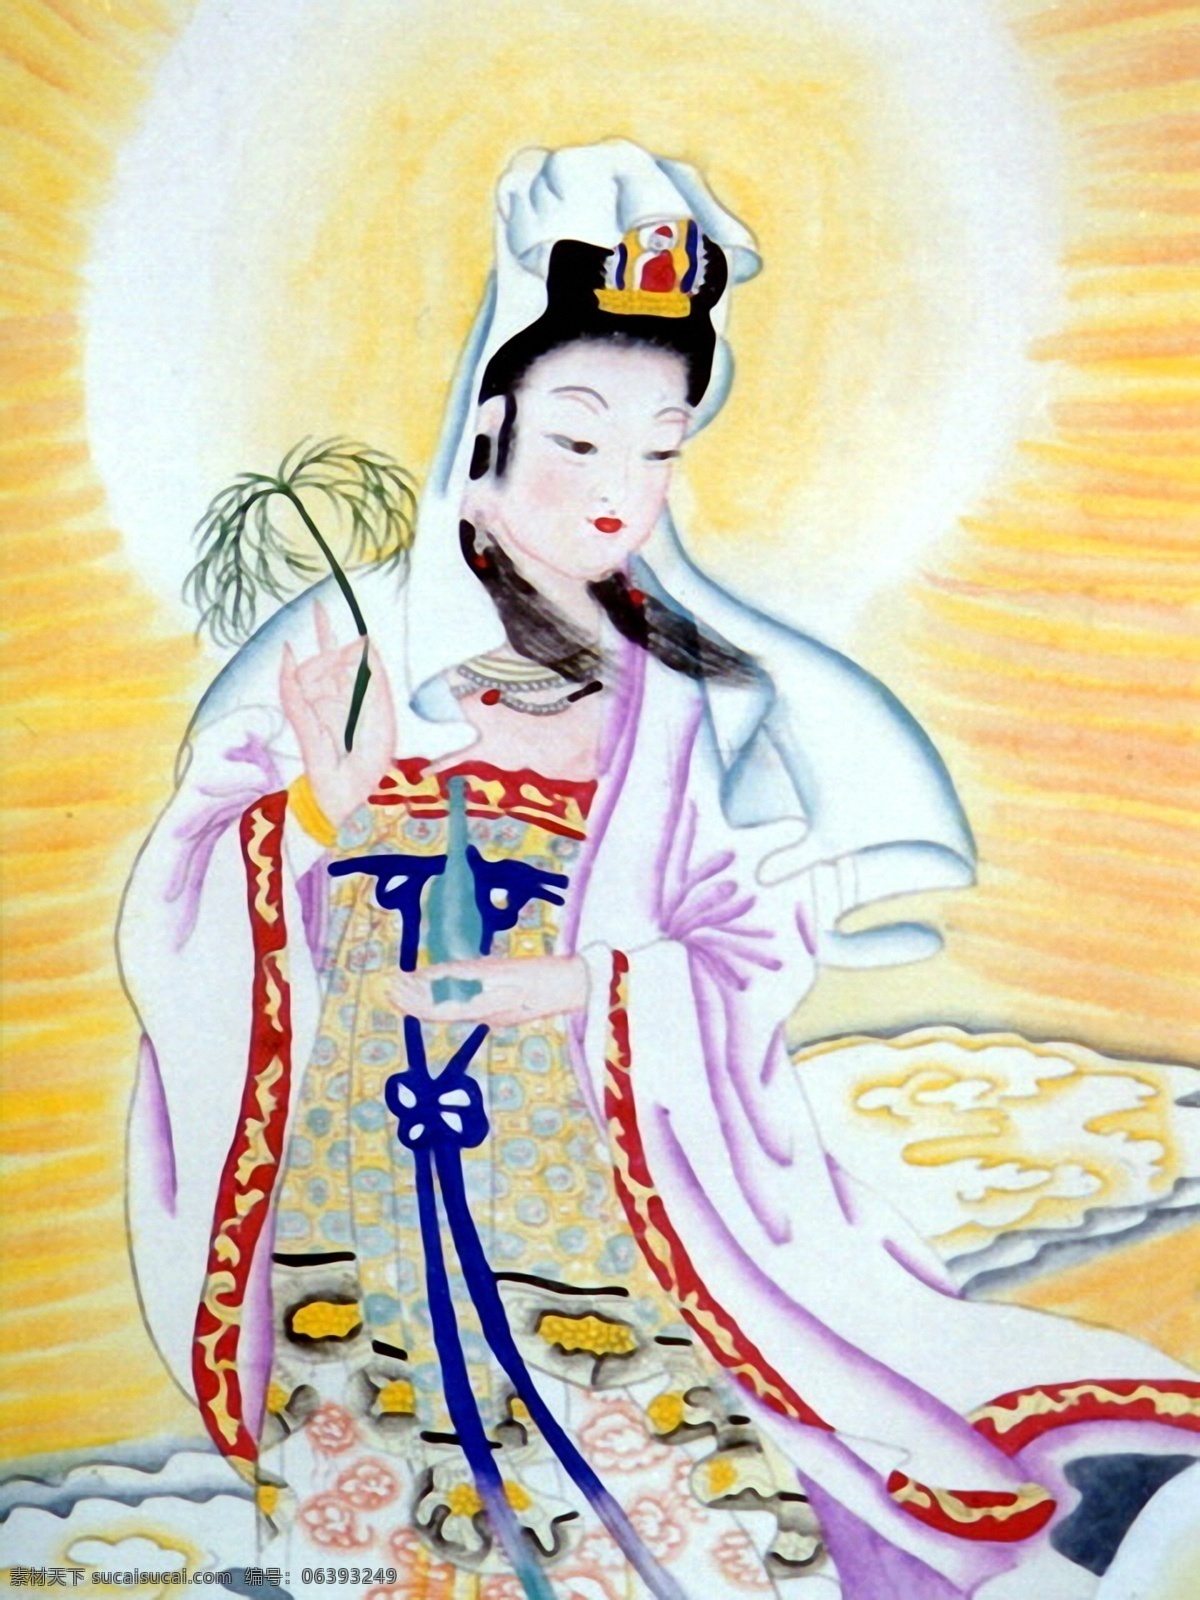 观音佛像 手绘仙佛 佛教文化 中国画 设计素材 神仙佛像 中国画篇 书画美术 黄色